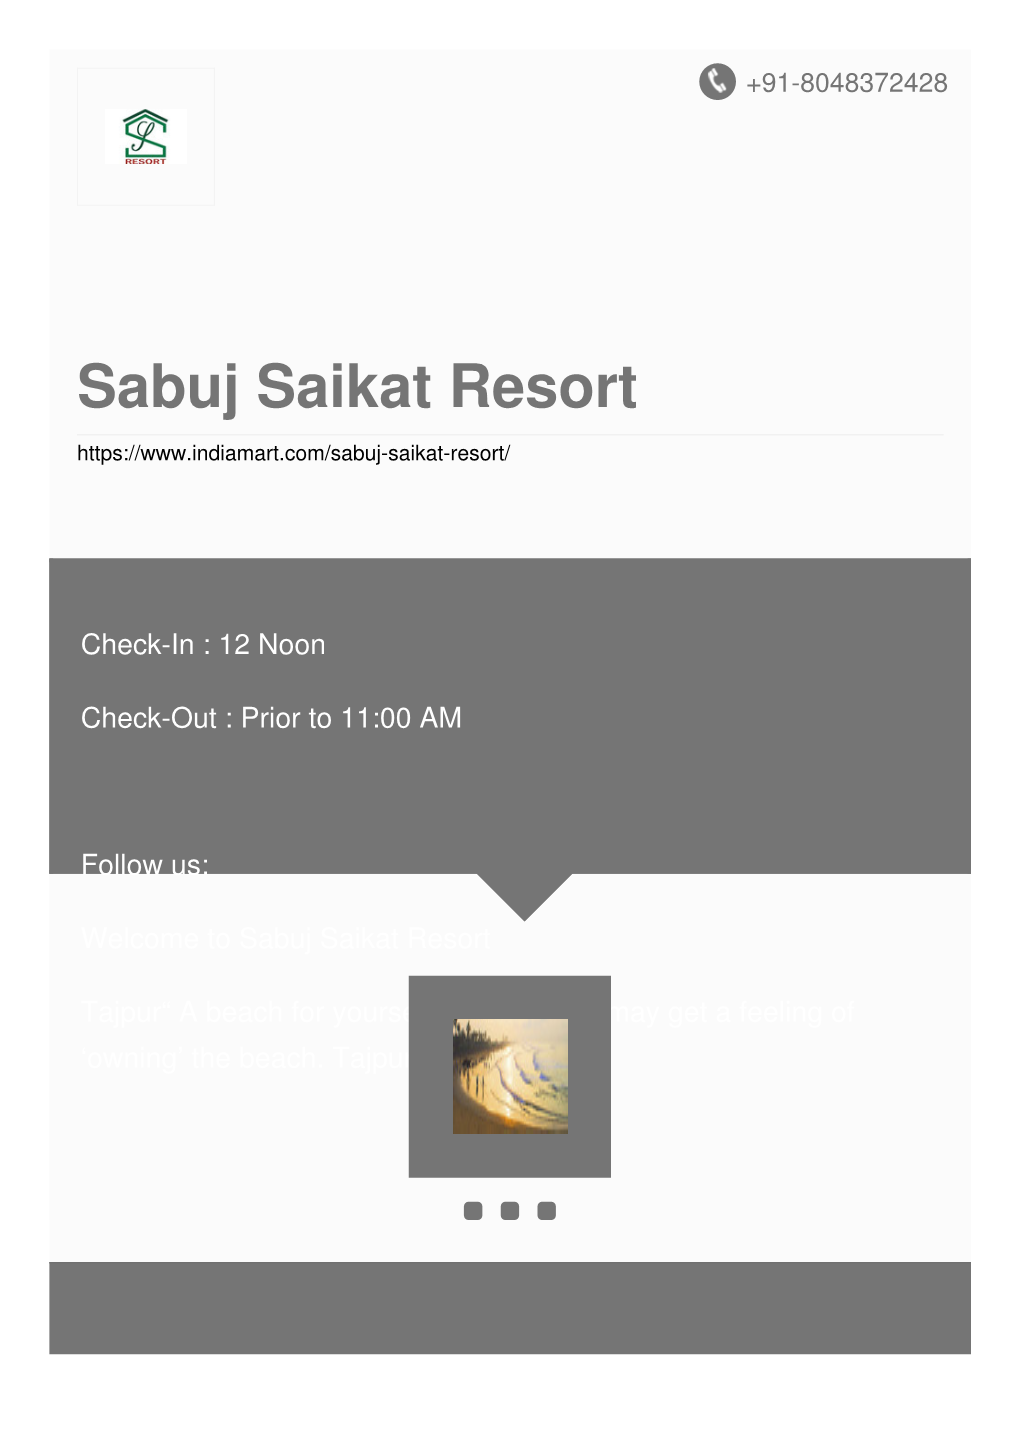 Sabuj Saikat Resort